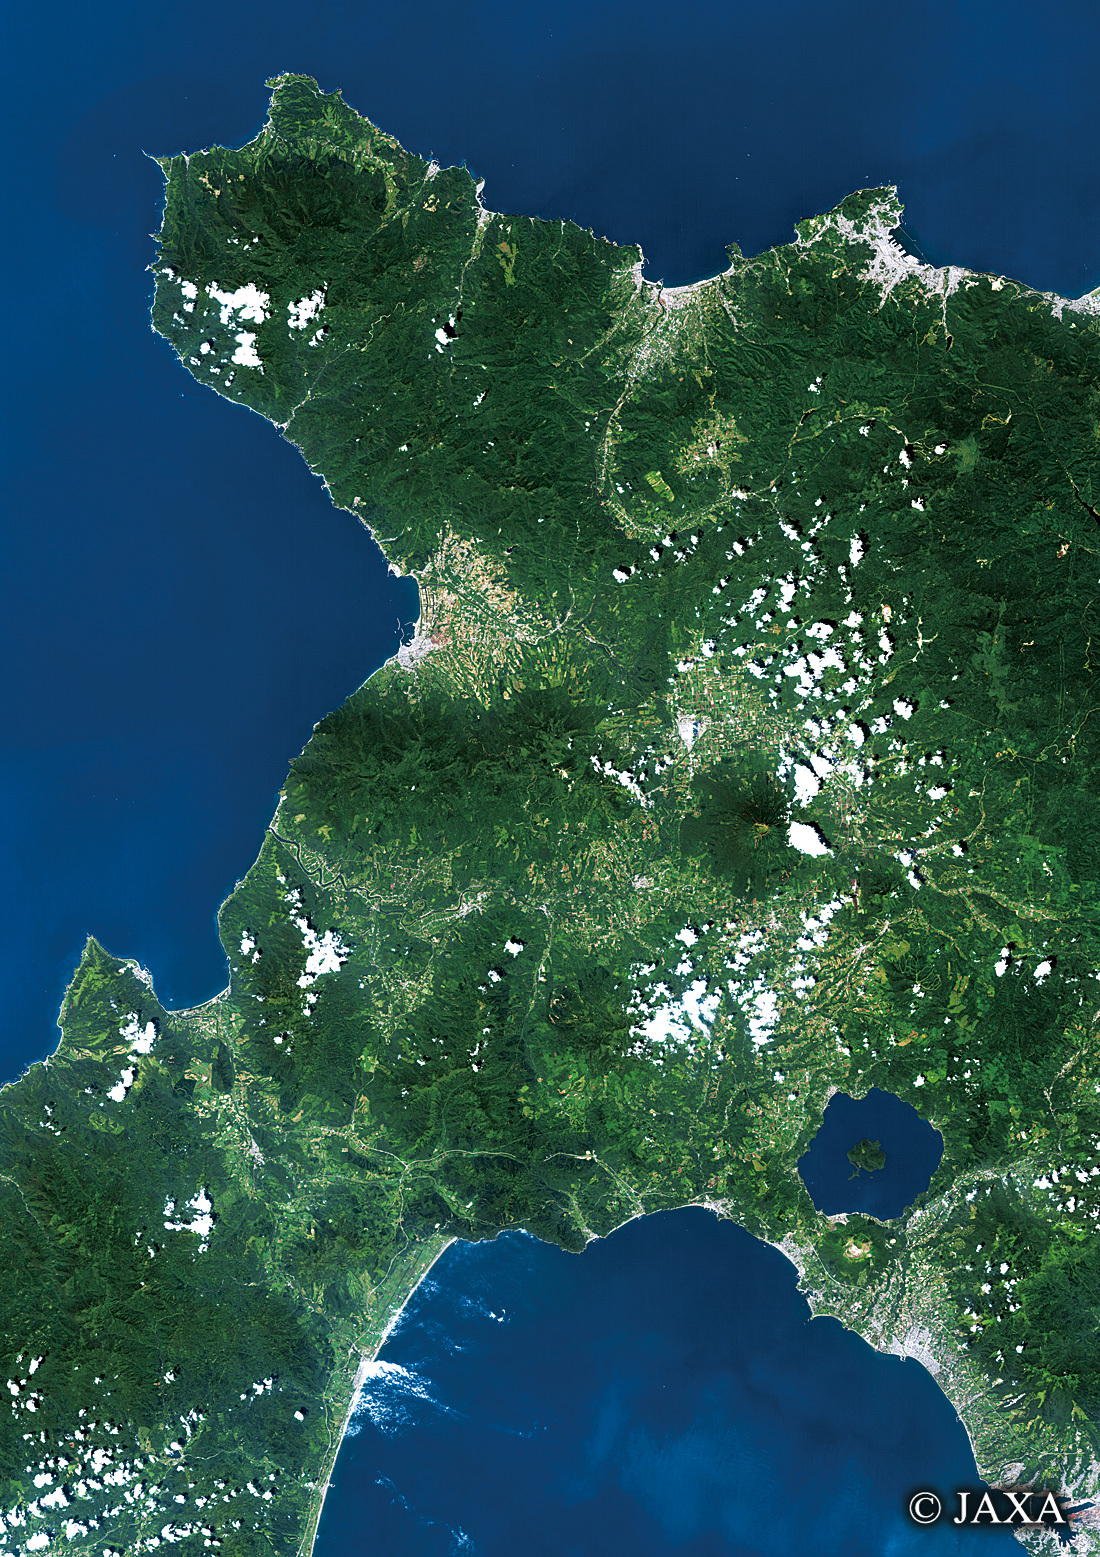 だいちから見た日本の都市 道央道南地方:衛星画像